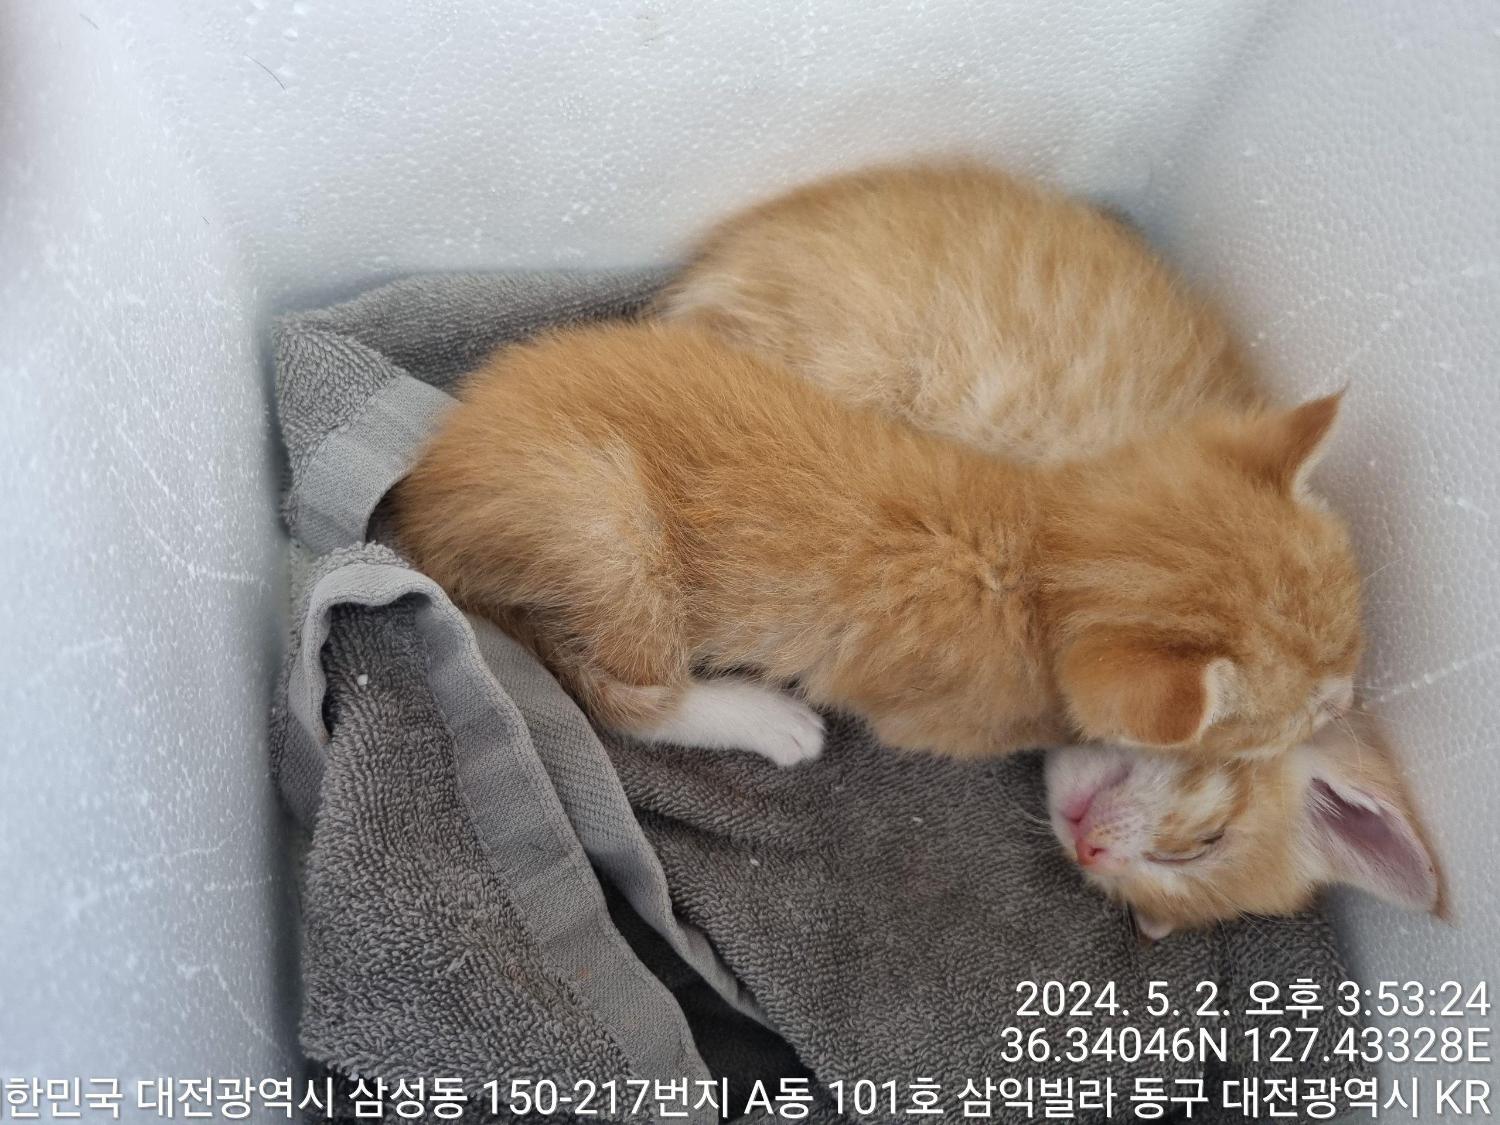 공고 번호가 대전-동구-2024-00119인 한국 고양이 동물 사진